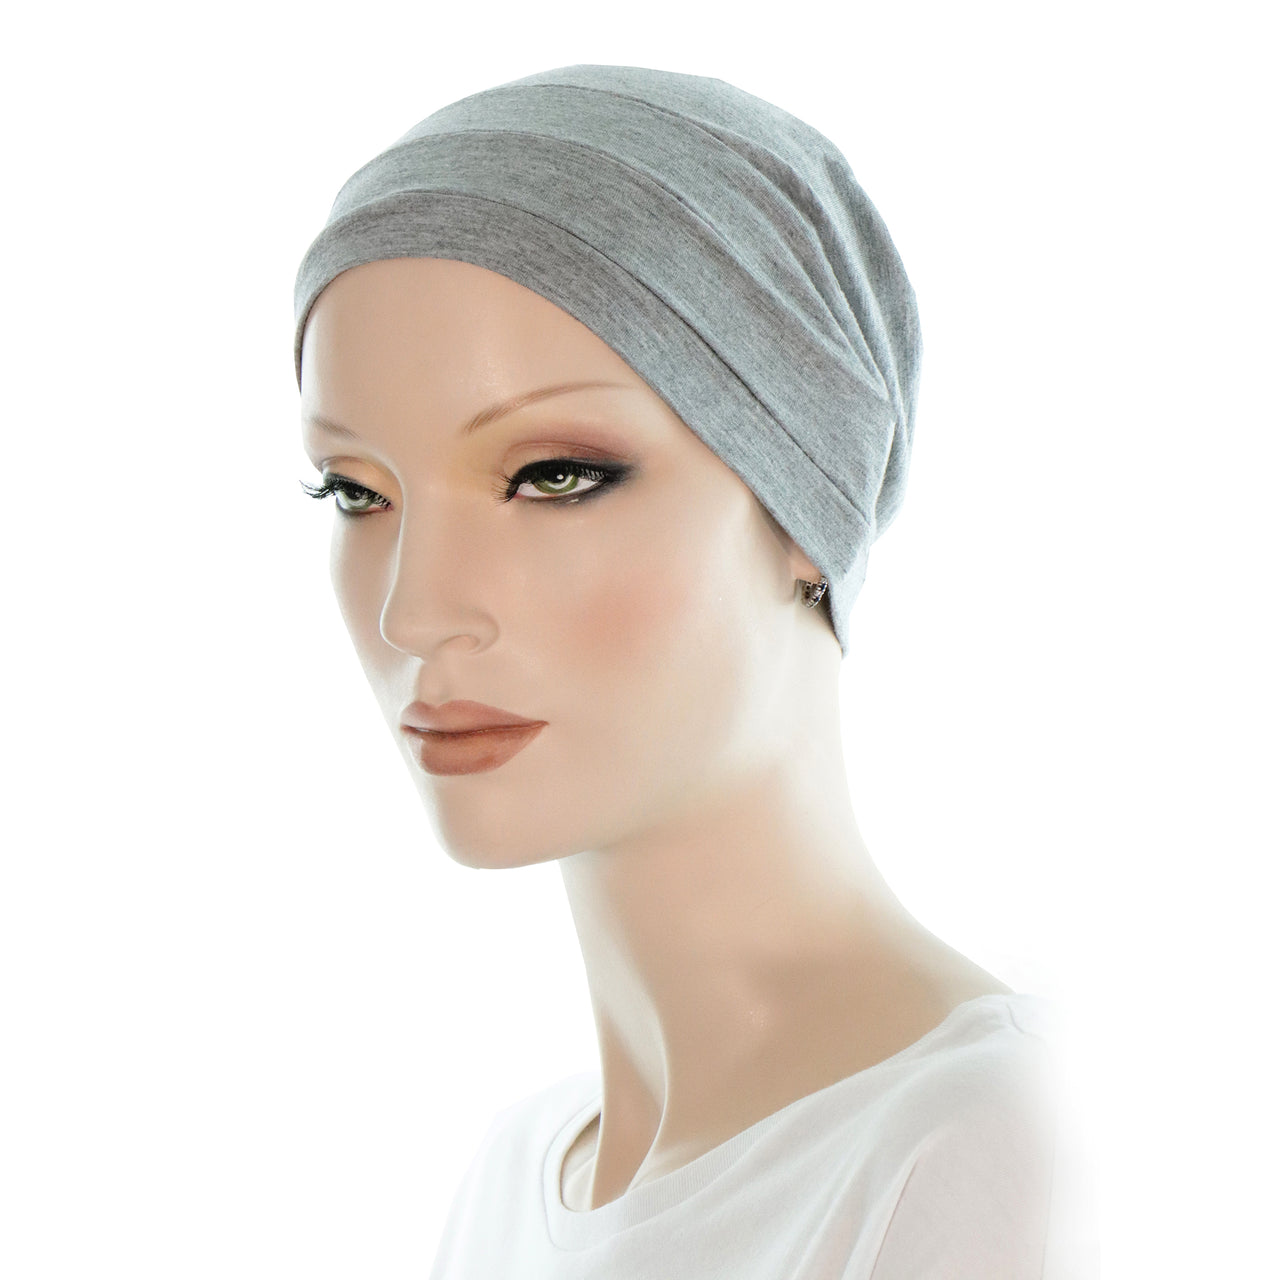 EINSKEY Bonnet de Nuit Homme Femme Coton Respirant Skull Cap pour Sport,  Chimio, Cancer, Sommeil